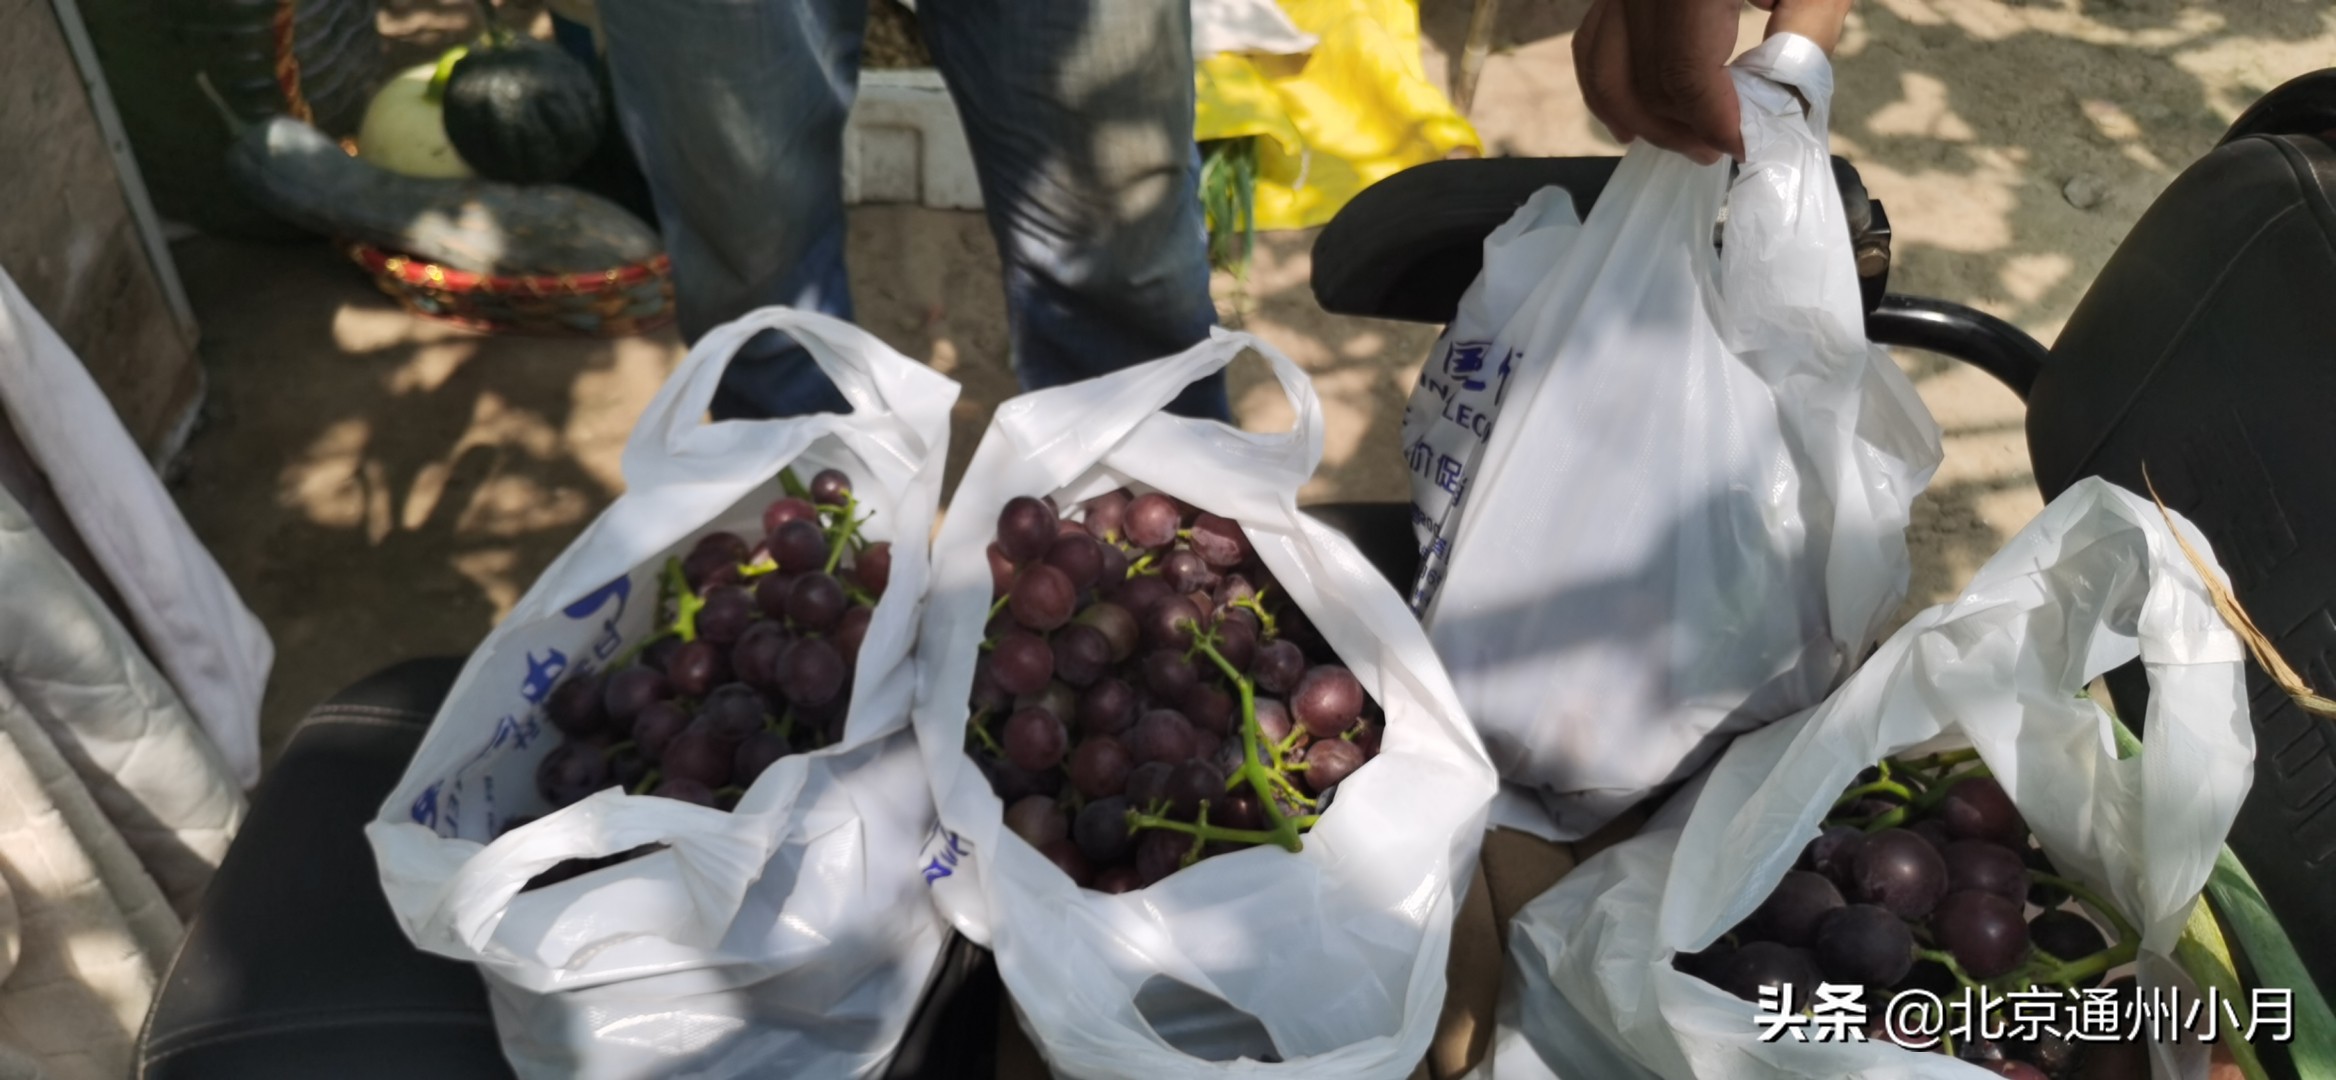 来北京采育吃最甜的葡萄 价格还便宜10元三斤 体验丰收的喜悦